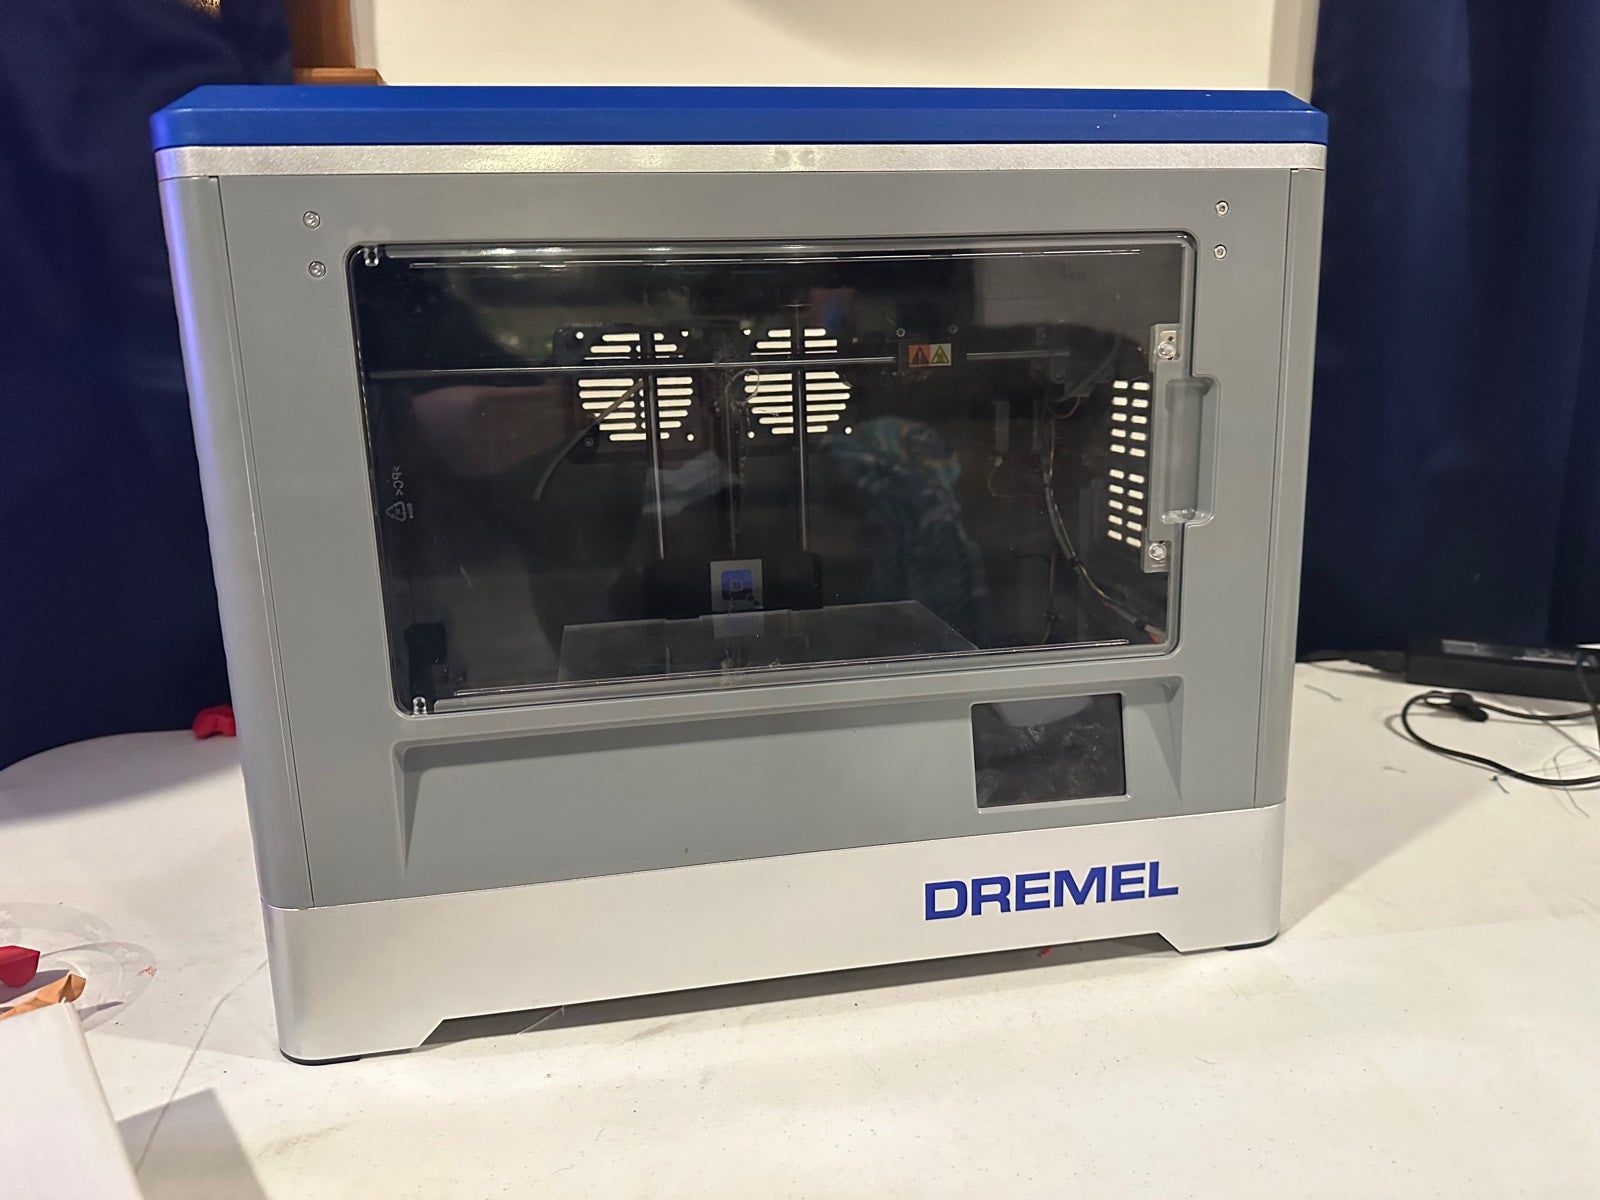 Dremel 3D20 Enclosed 3D Printer for Sale in GA - OfferUp